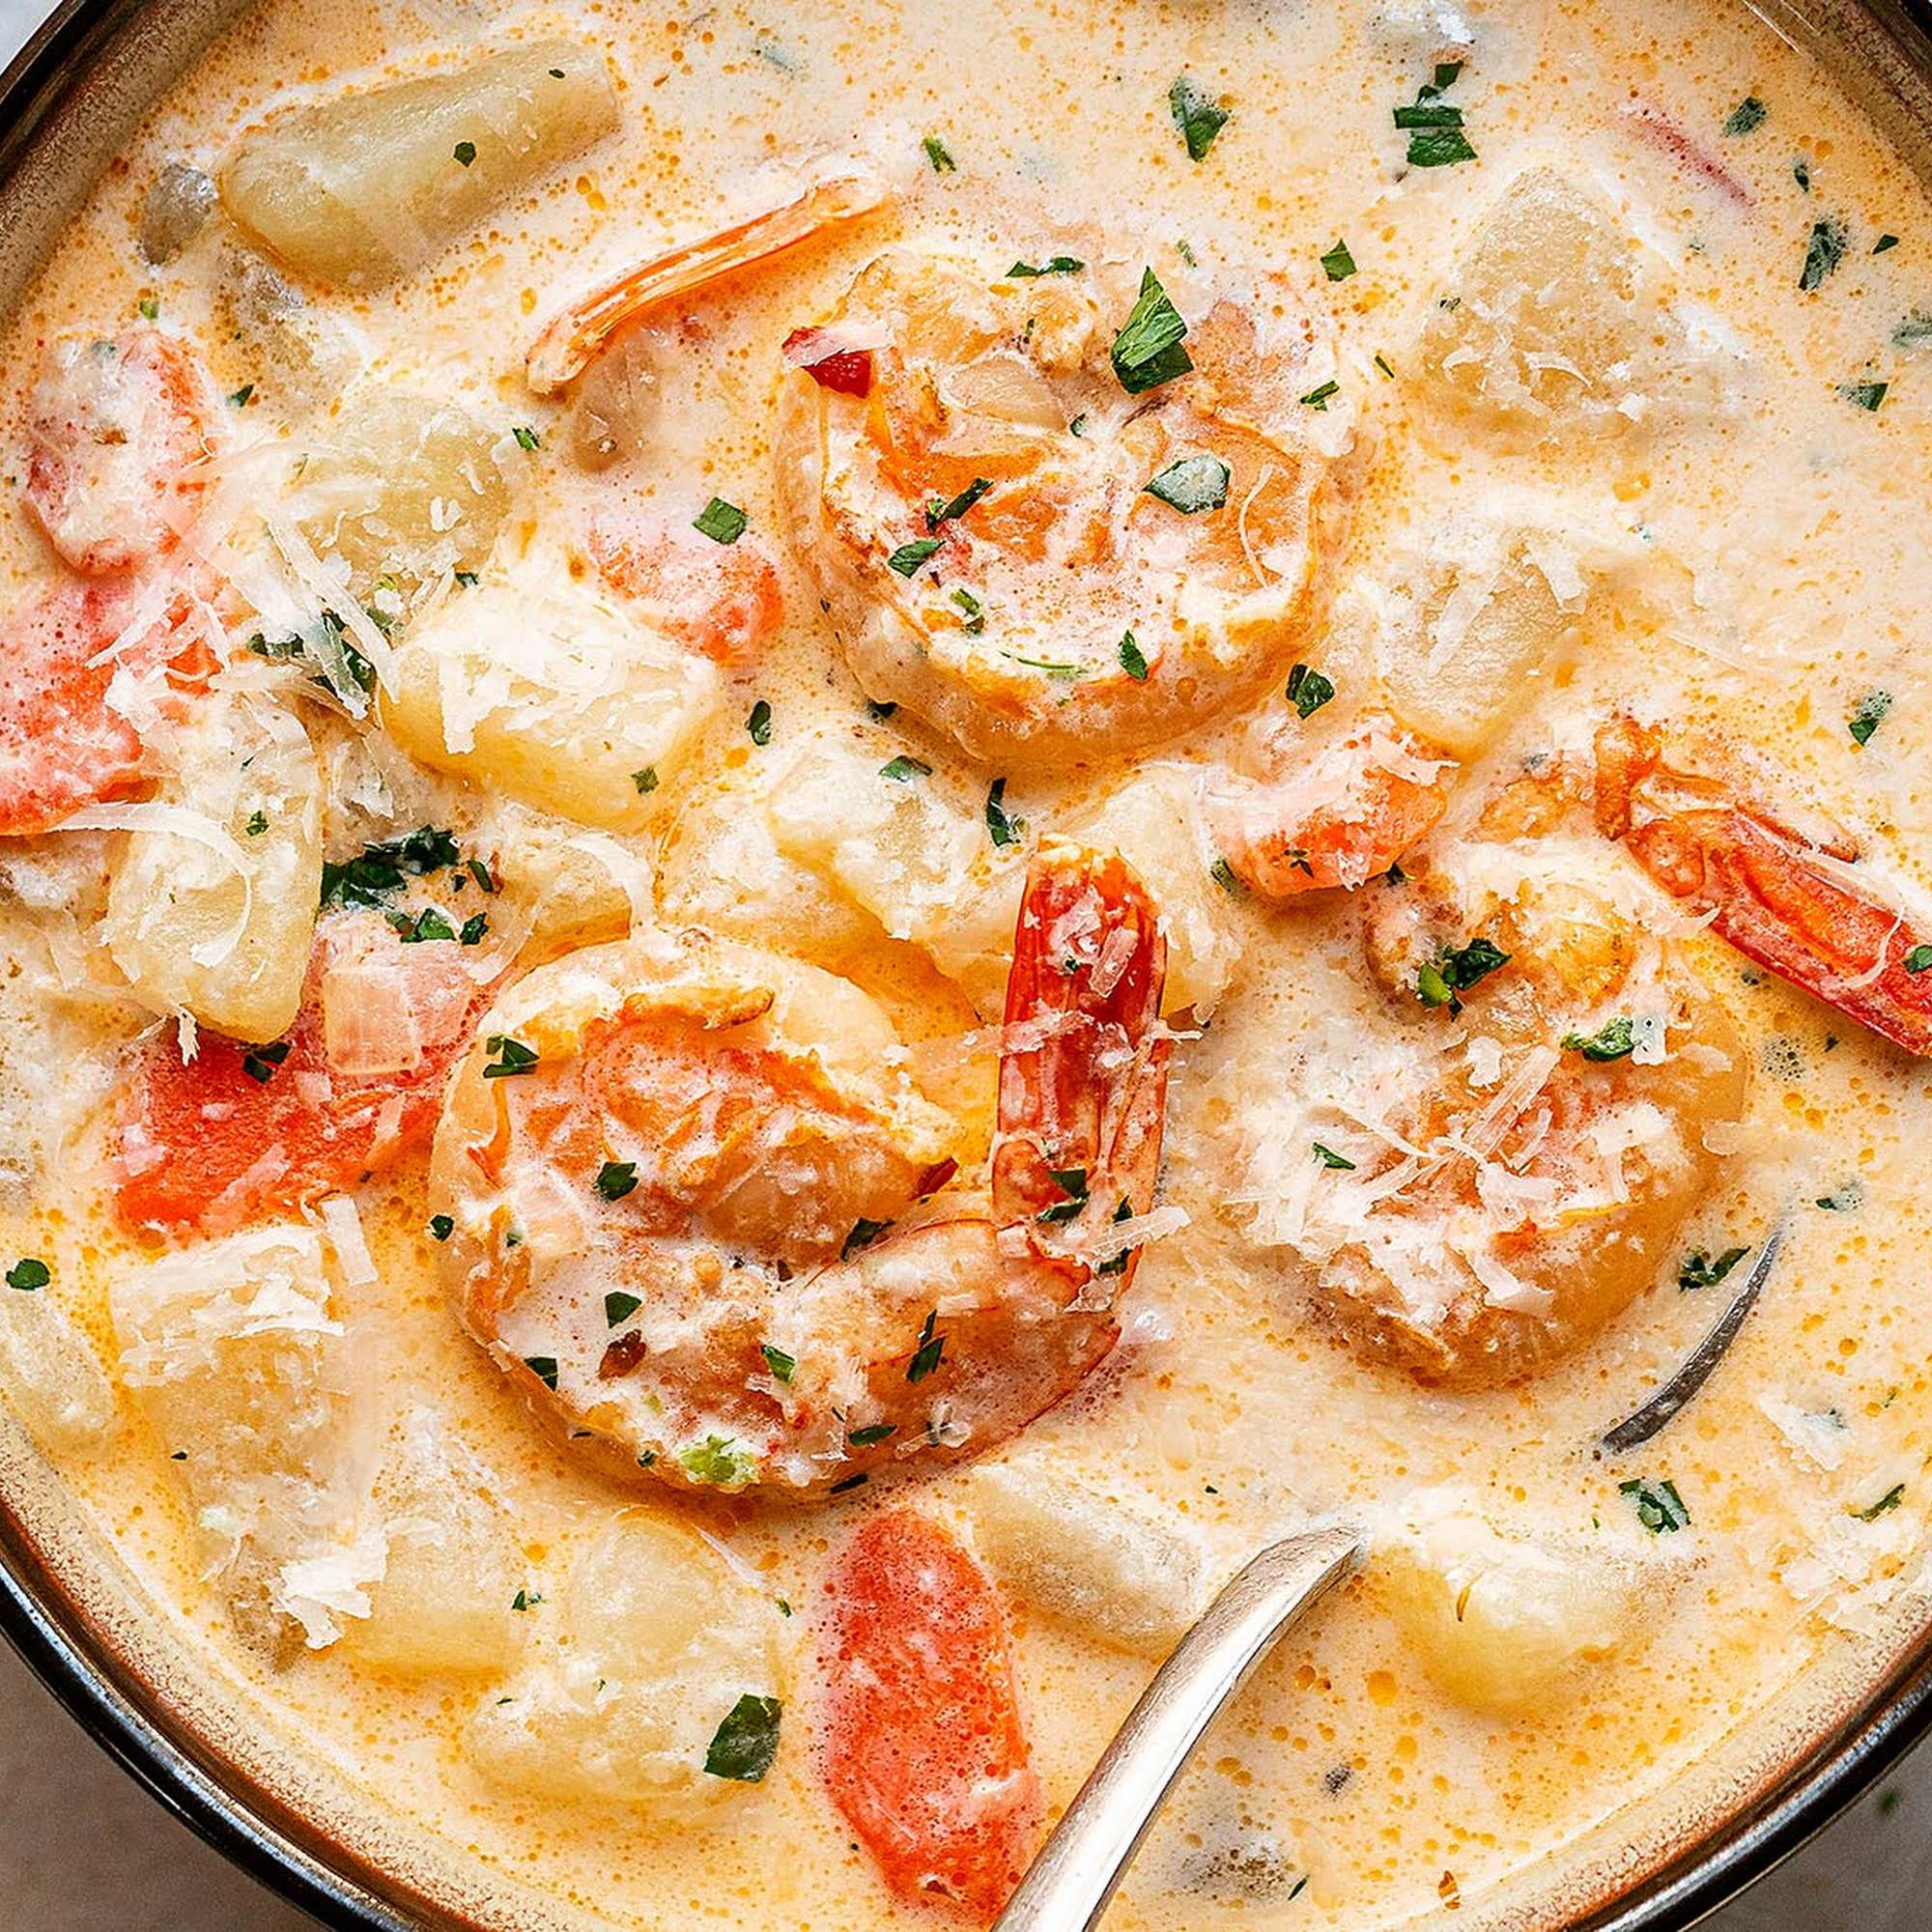 Creamy Shrimp Soup - BEST